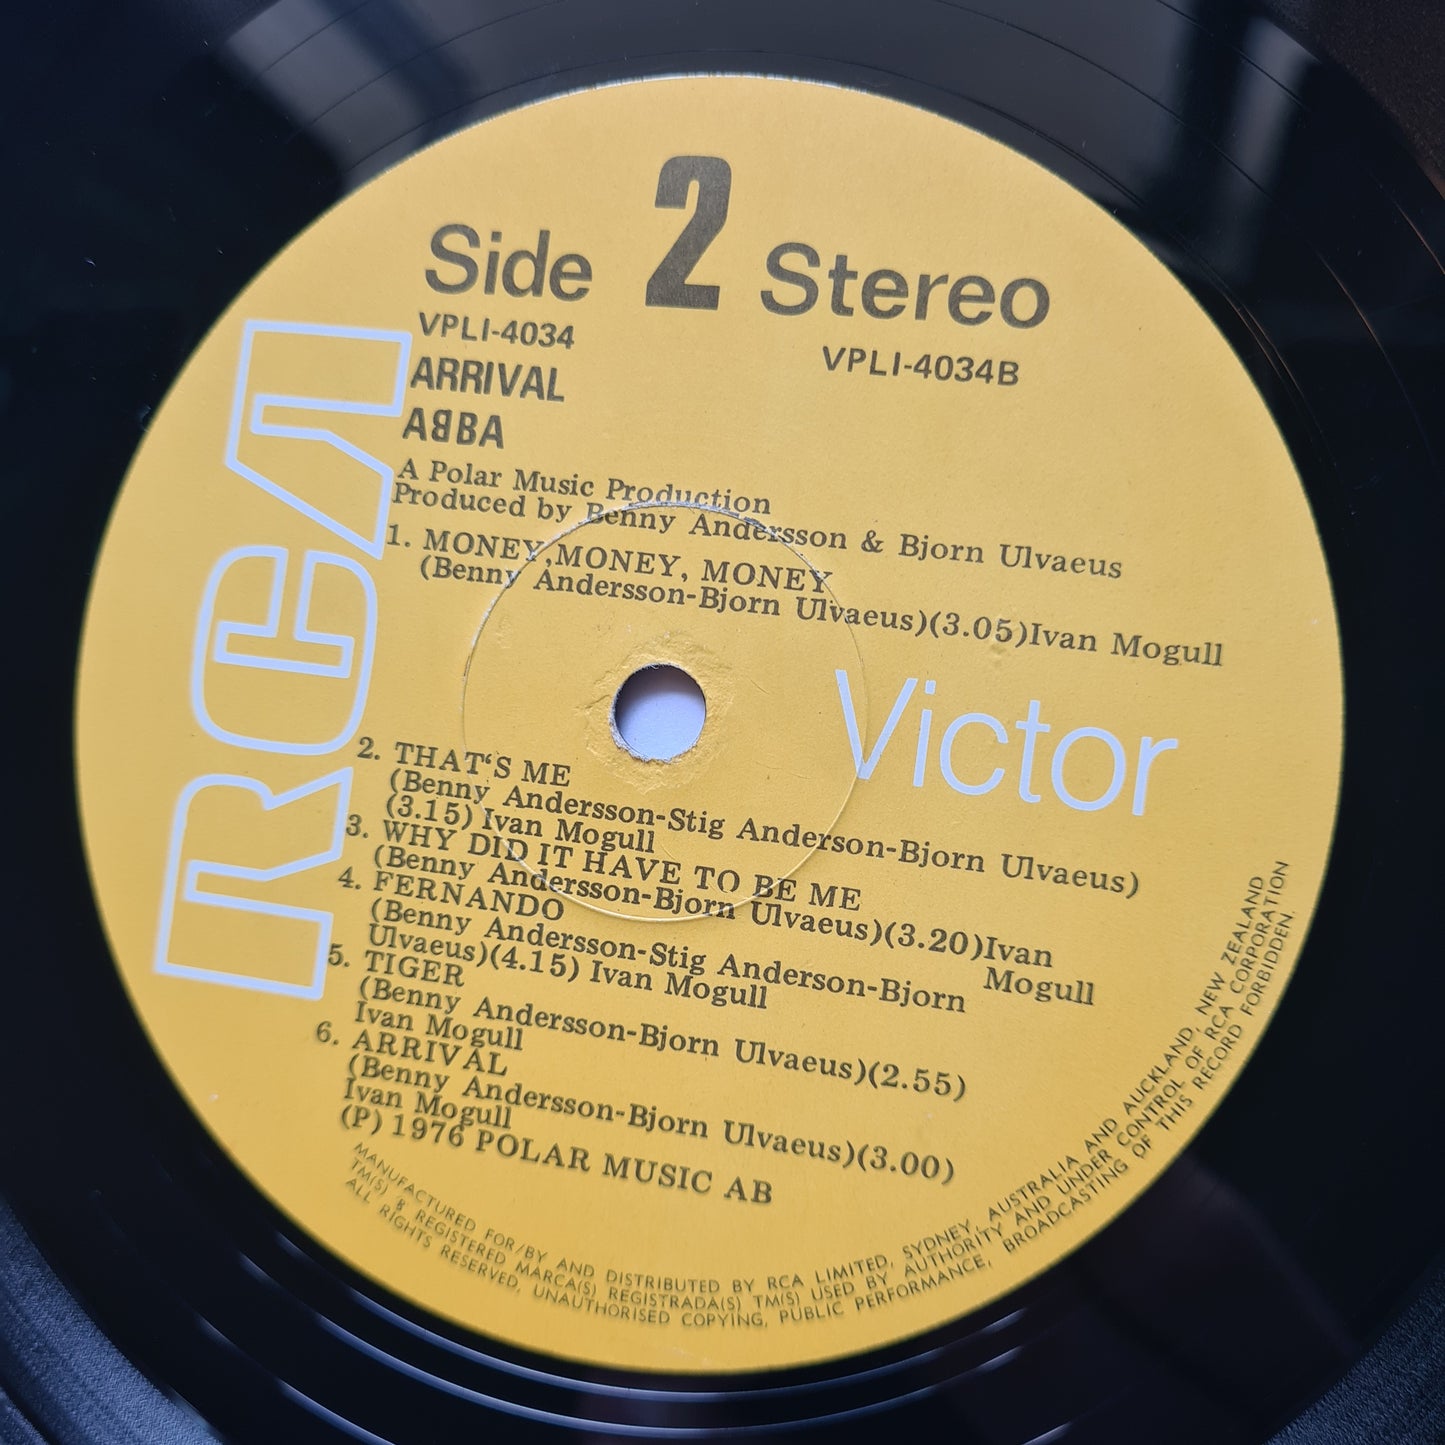 ABBA – Arrival - 1976 - Vinyl Record